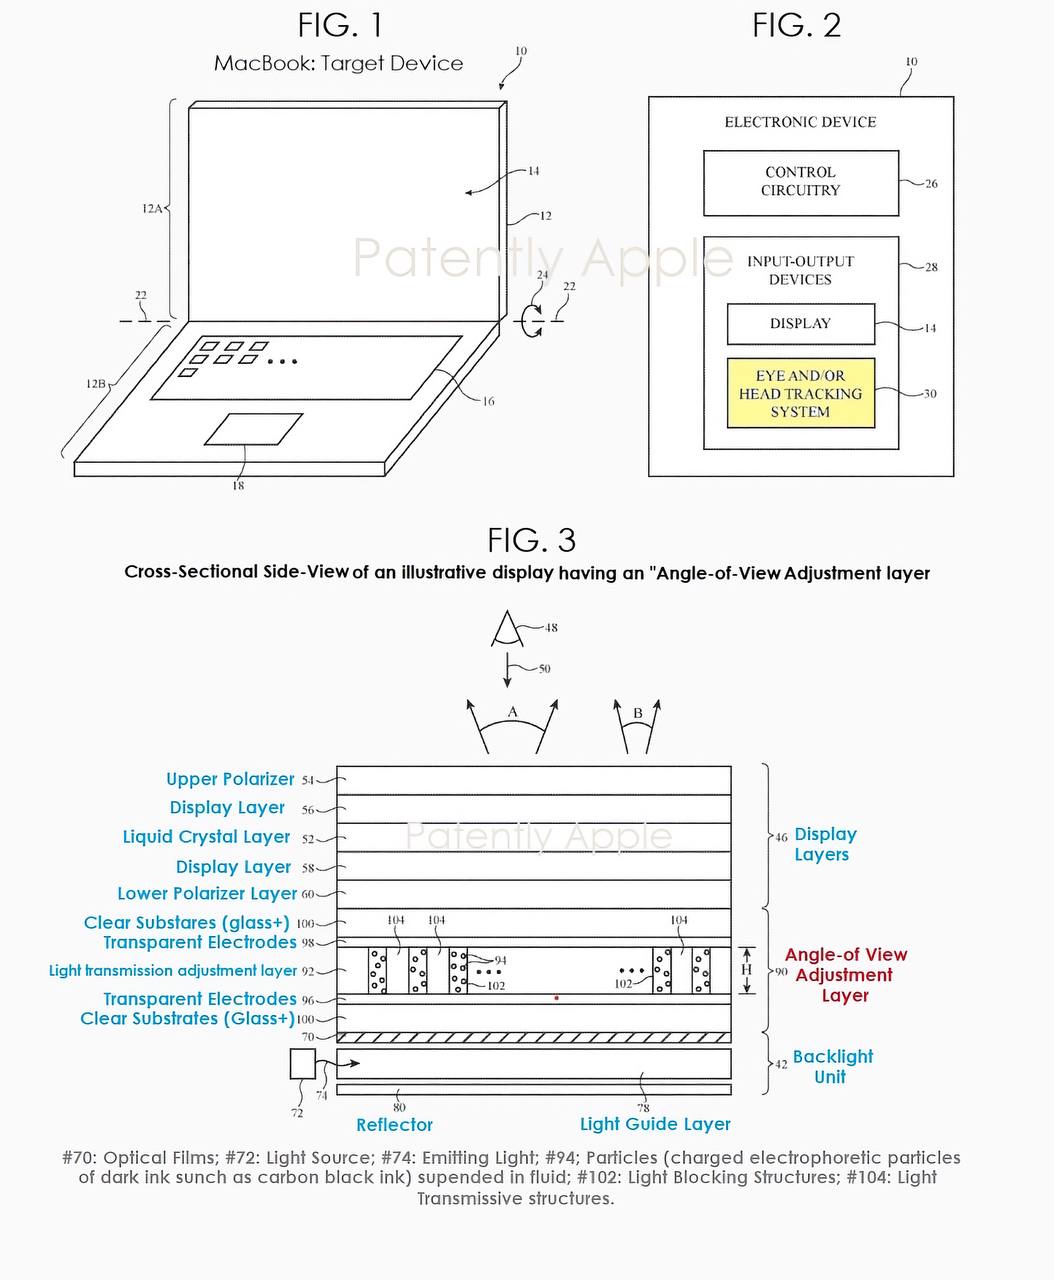 Описание технологии патента на антишпион-стекло в будущих MacBook (© Patently Apple)